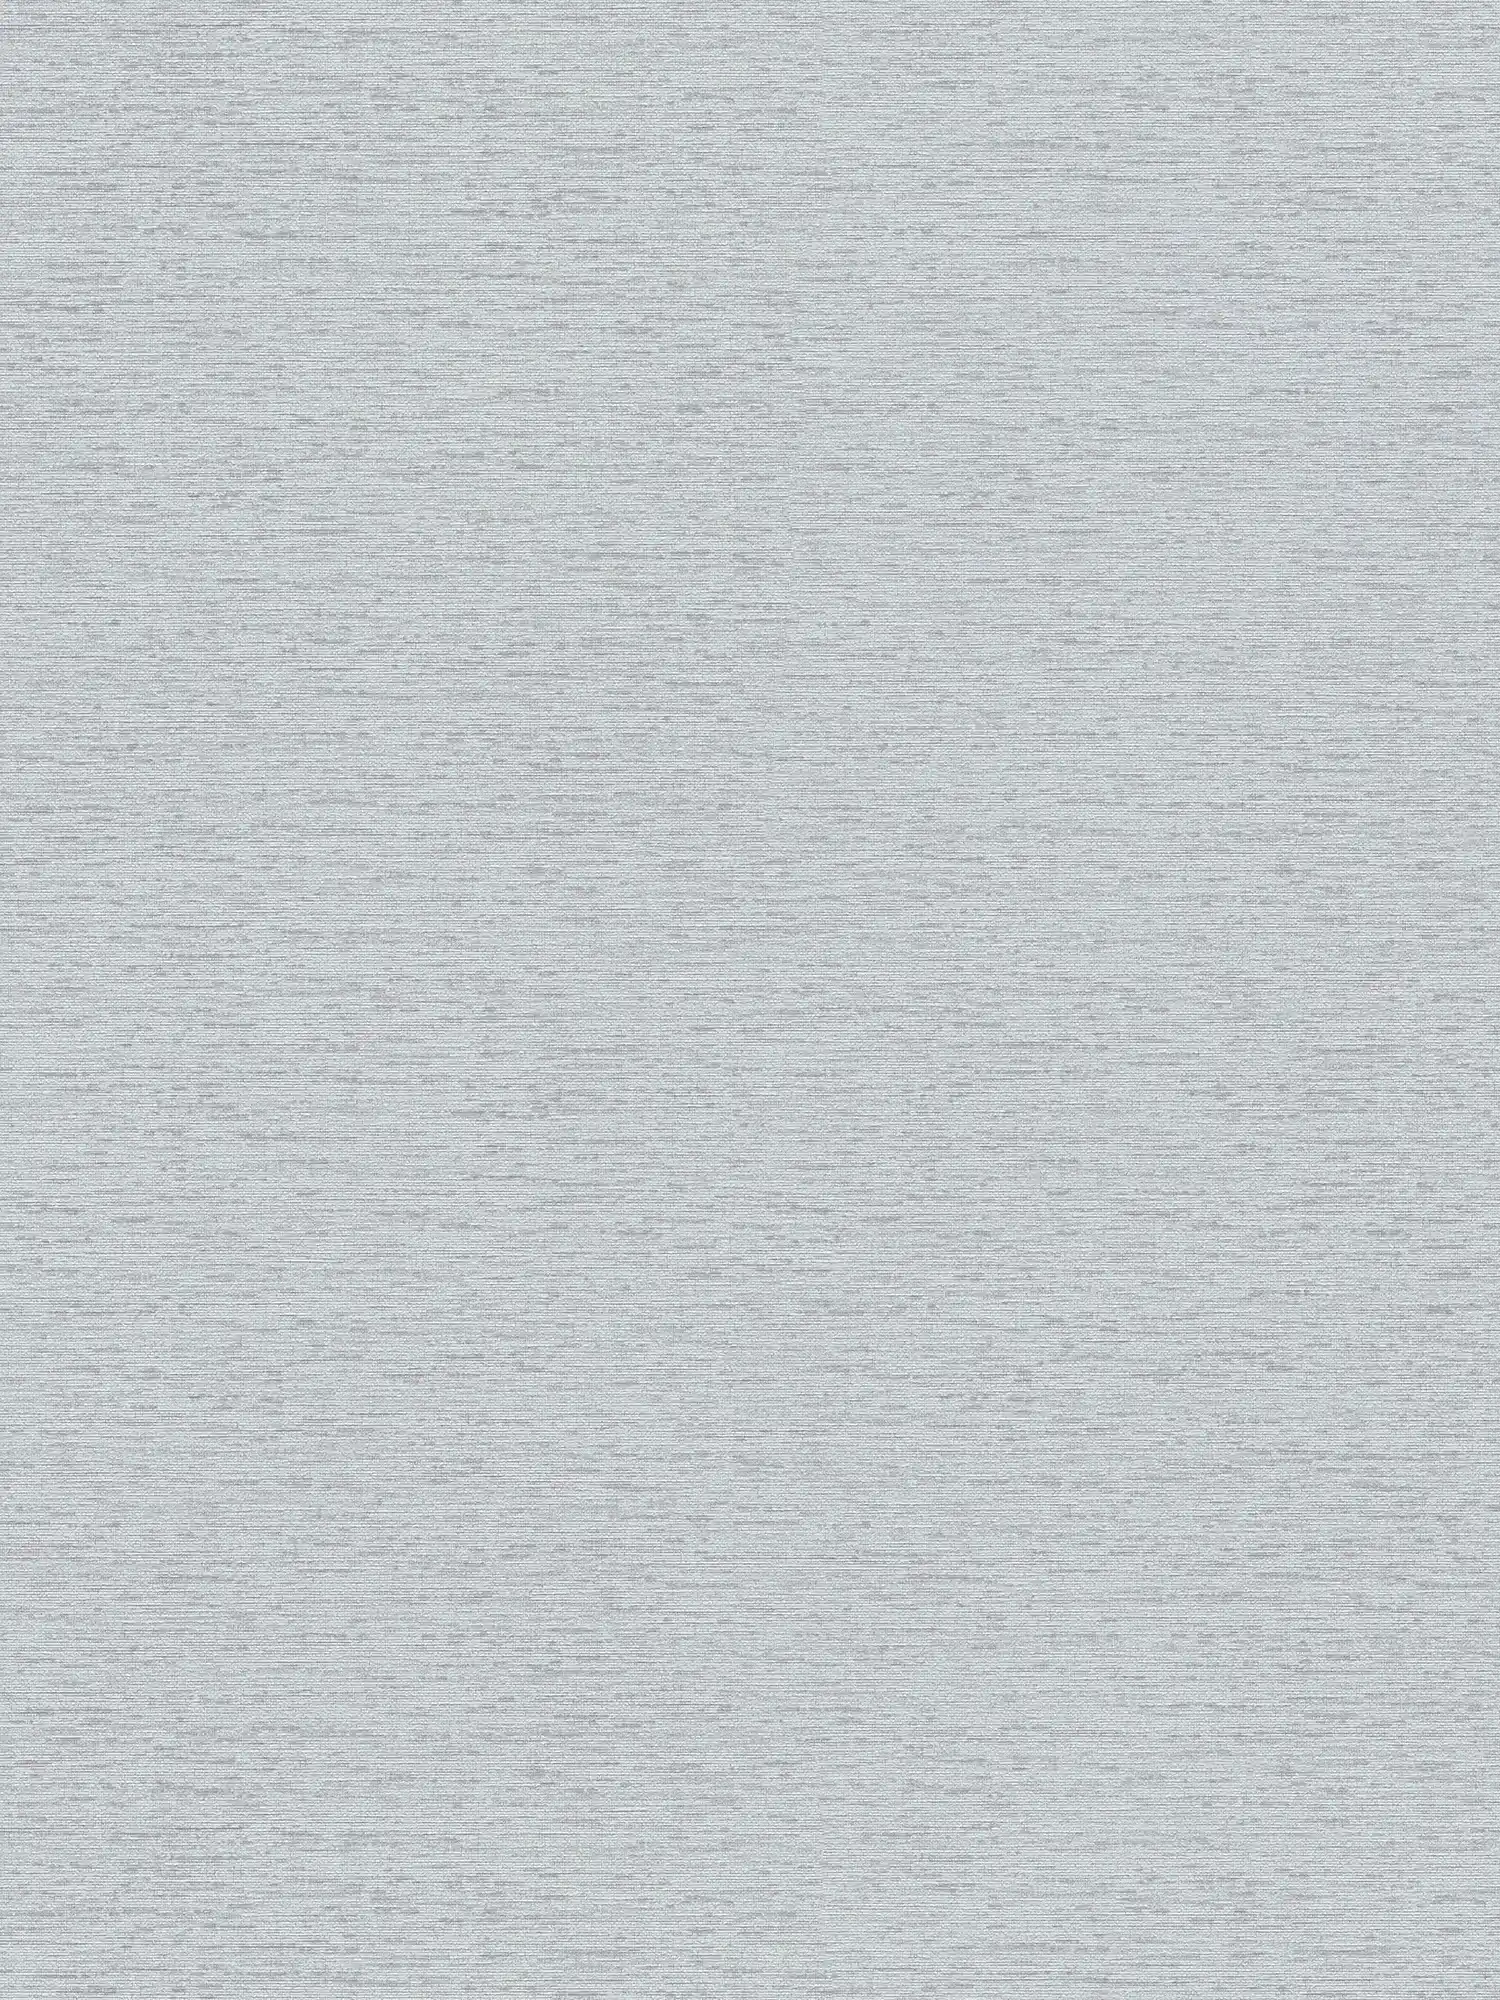 Carta da parati non tessuta a tinta unita con struttura leggera, opaca - grigio, grigio chiaro
